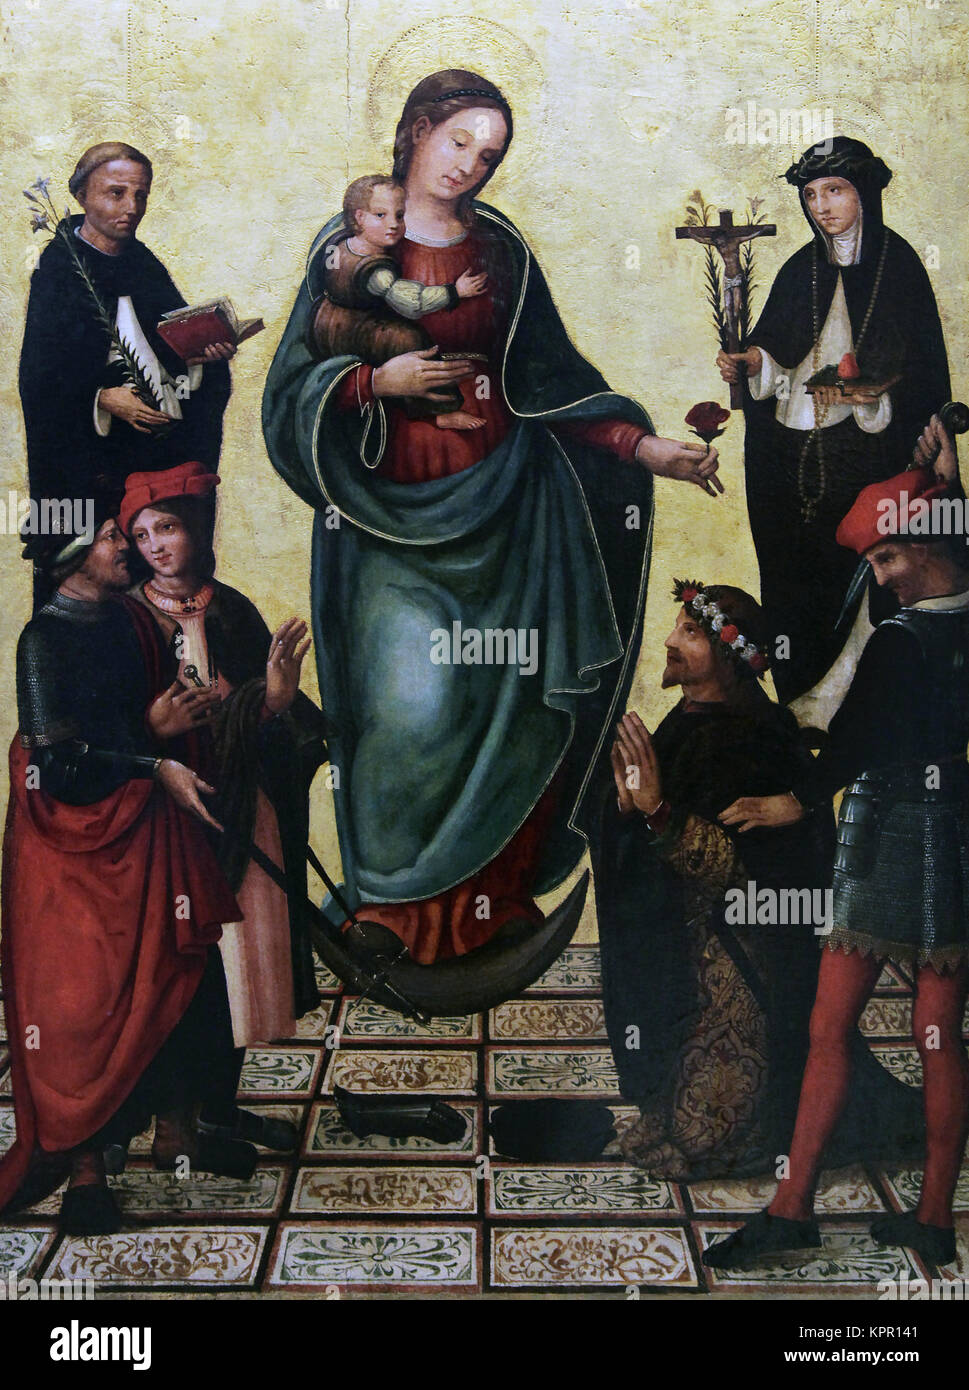 Wunder von Köln Ritter/Milagro del Caballero de Colonia von Miguel Esteve 1507-1528 ein spanischer Maler. un Pintor renacentista Español Stockfoto